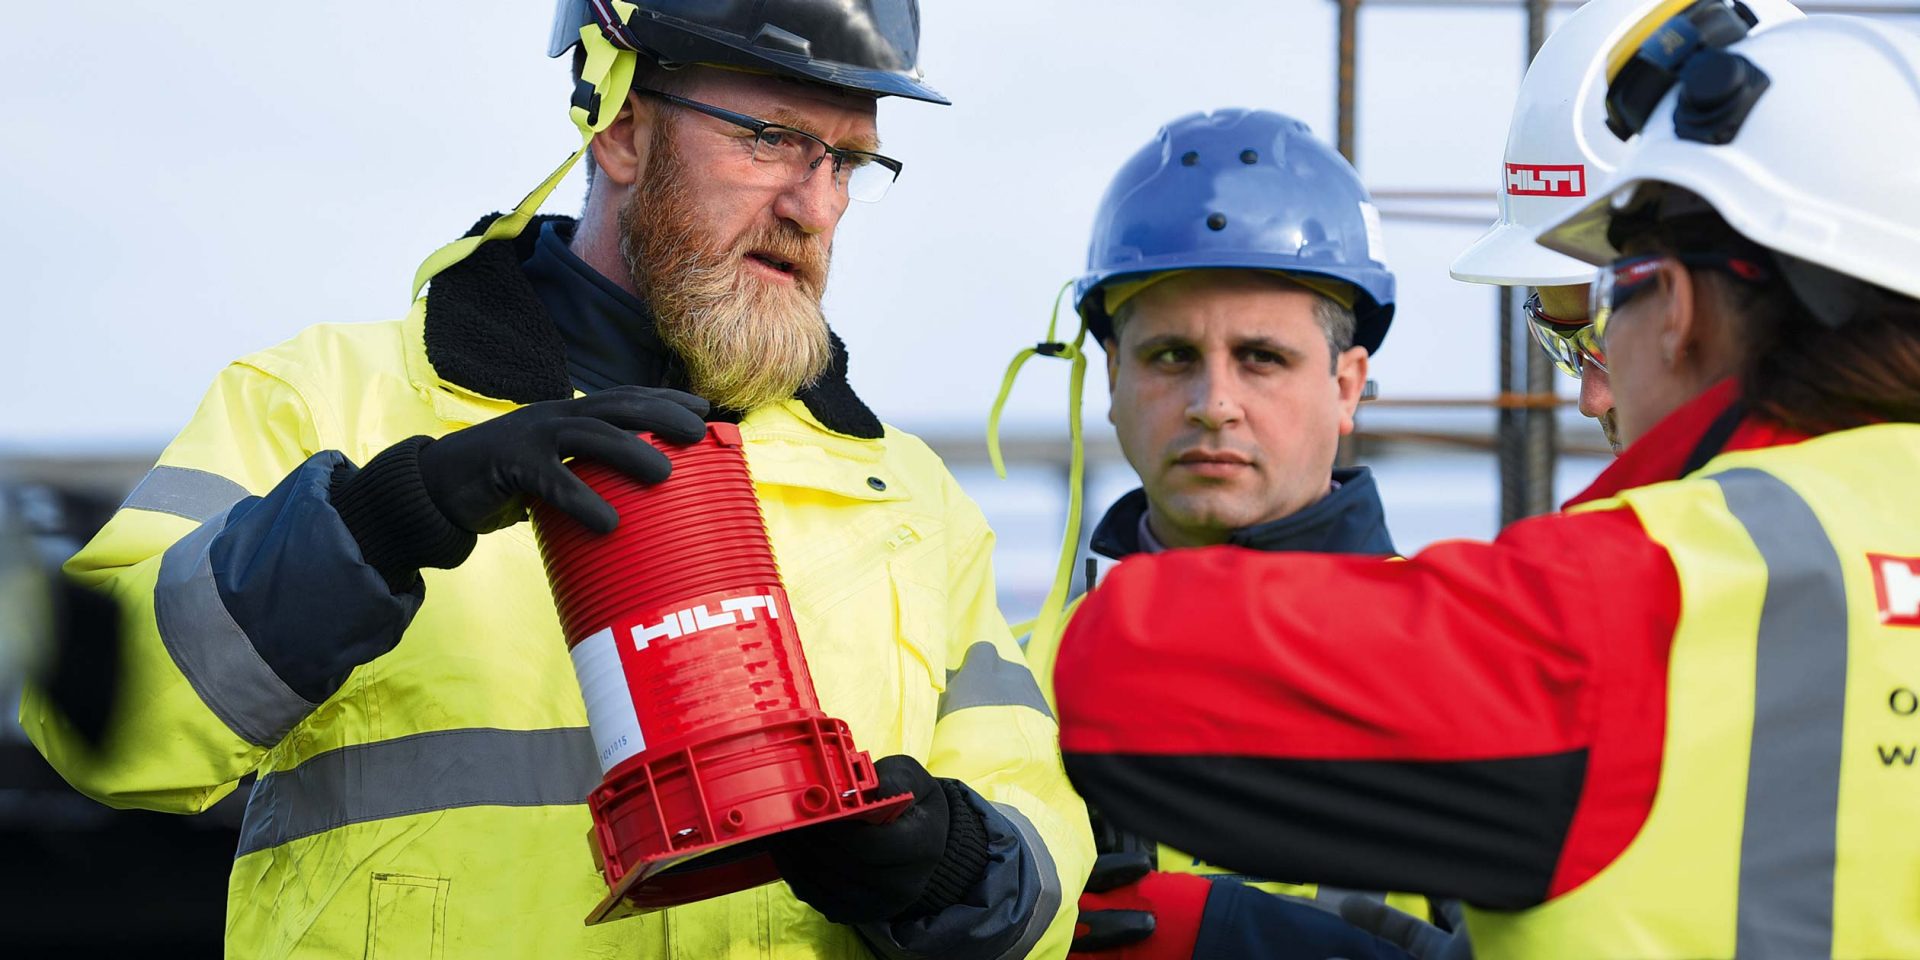 Bouwvakker en voorman of werfleider in gesprek, een Hilti brandbeveiligingsproduct van Hilti wordt in hun handen gehouden.